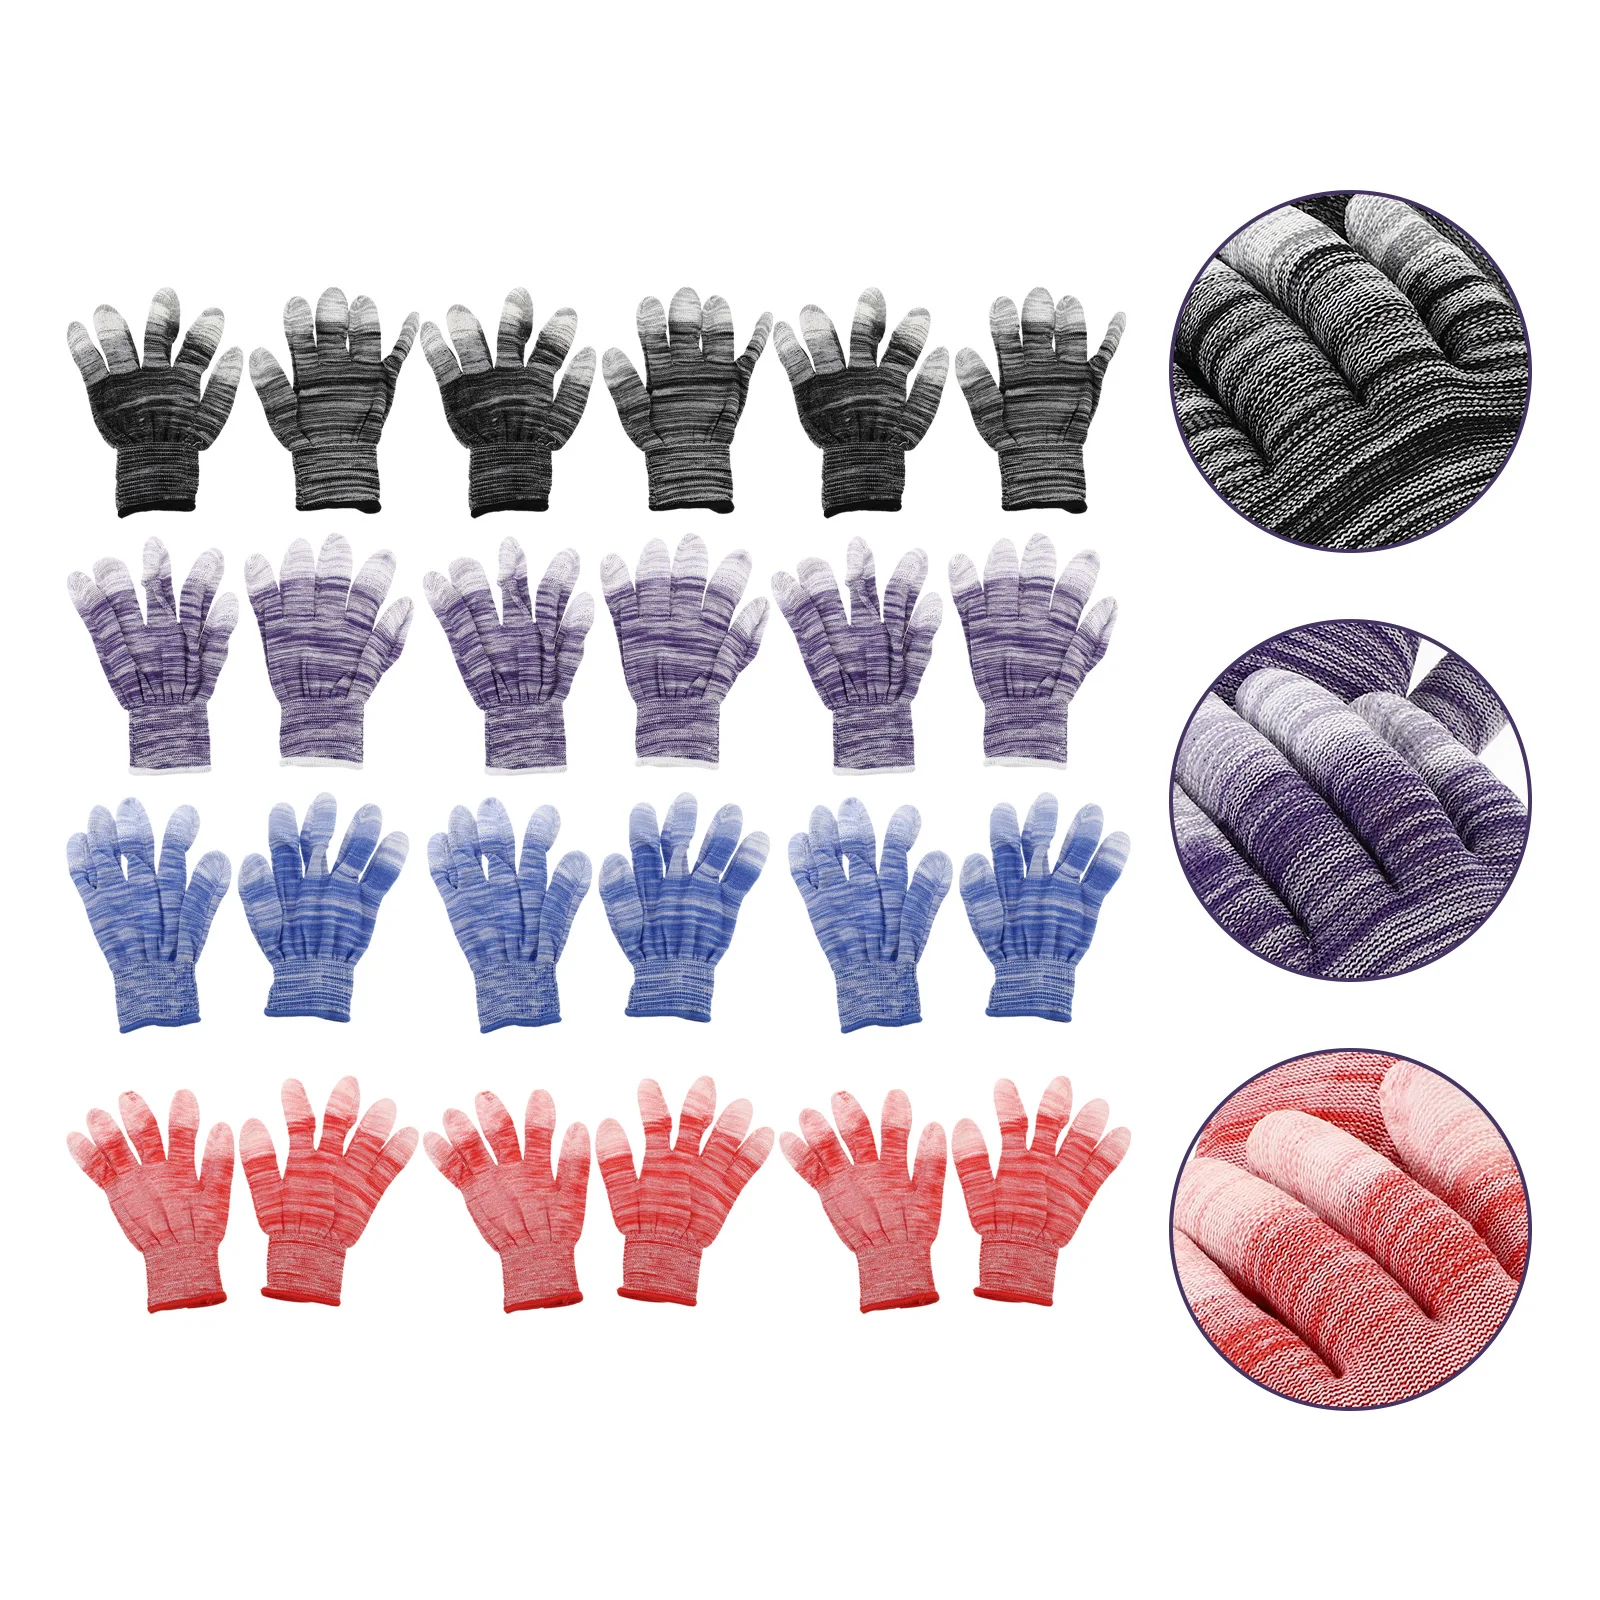 

12 Pairs Non-Skid Gloves Mitten Gardening Gloves Protective Working Gloves